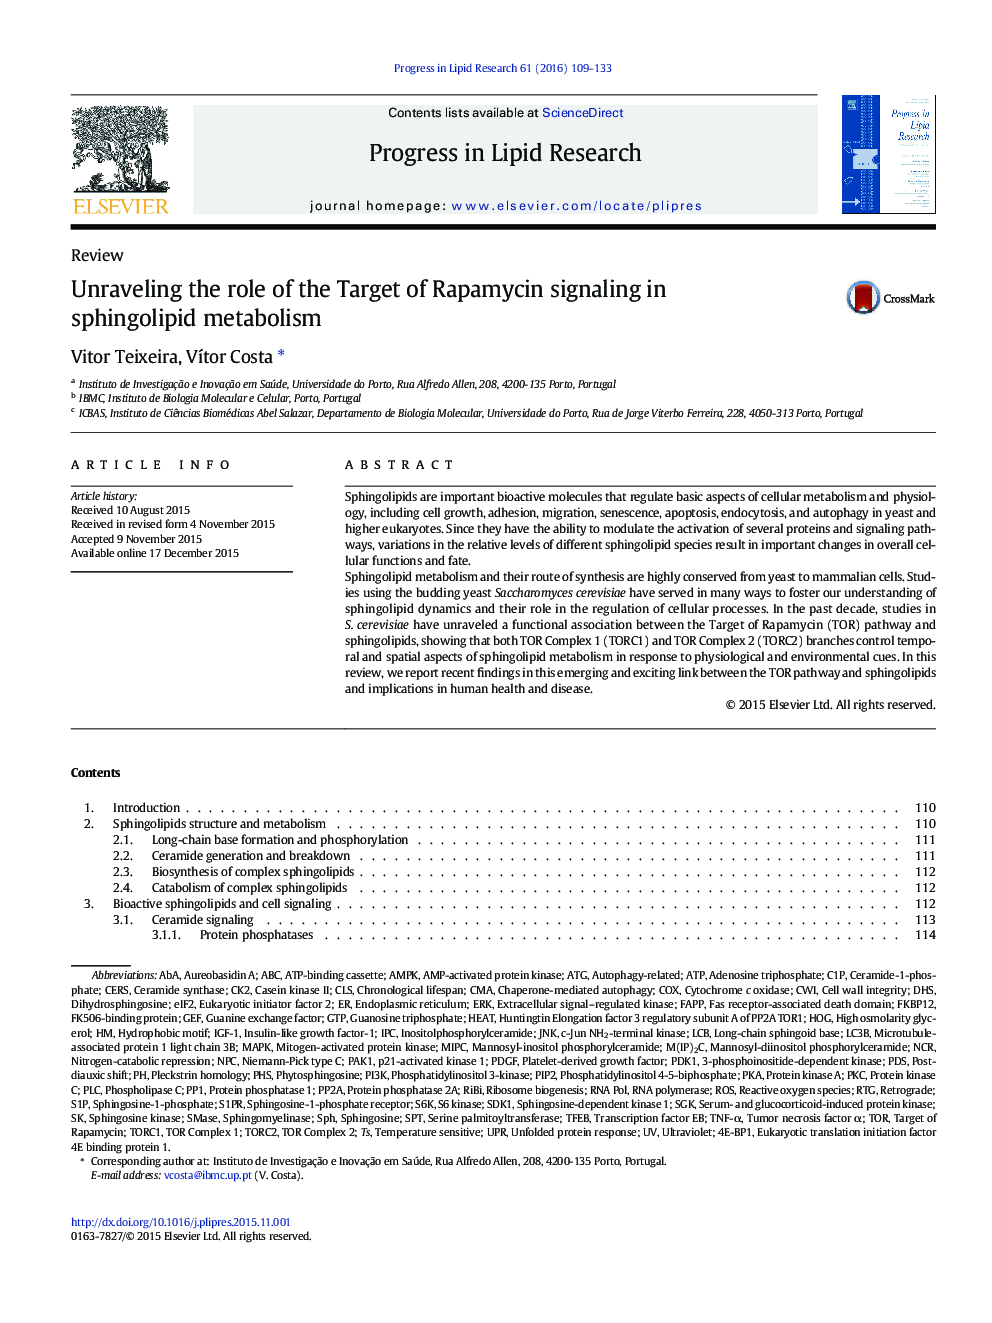 تجزیه و تحلیل نقش هدف سیگنالینگ رپامایسین در متابولیسم اسپینگولایپید 